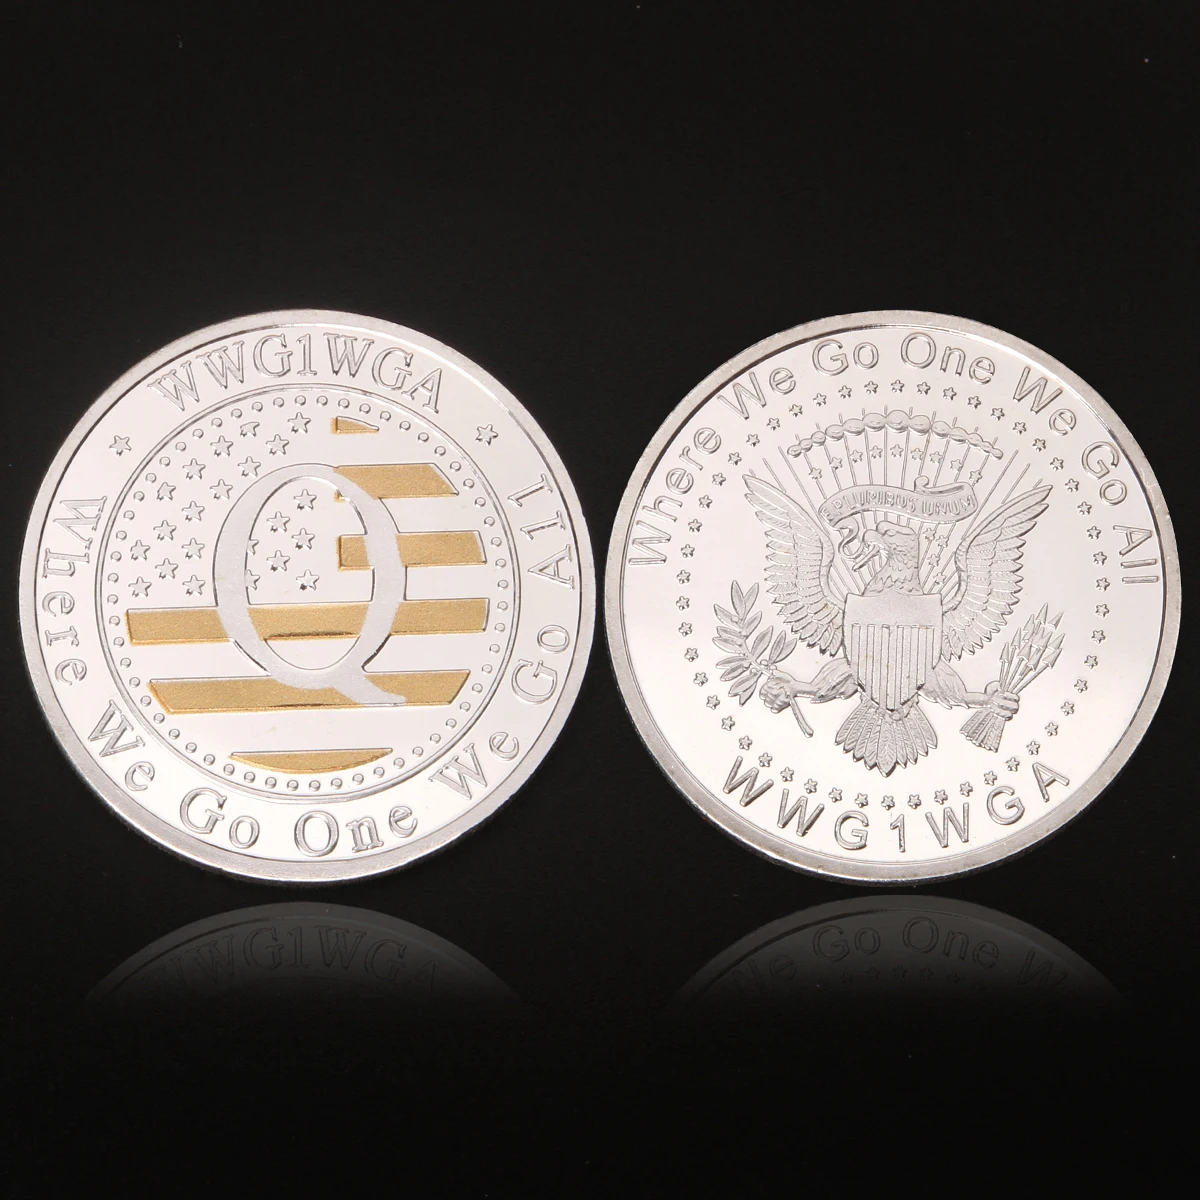 Moneda militar, moneda de desafío estadounidense, monedas personalizadas del ejército, monedas de metal, moneda de águila estadounidense, moneda de oro, monedas conmemorativas personalizadas